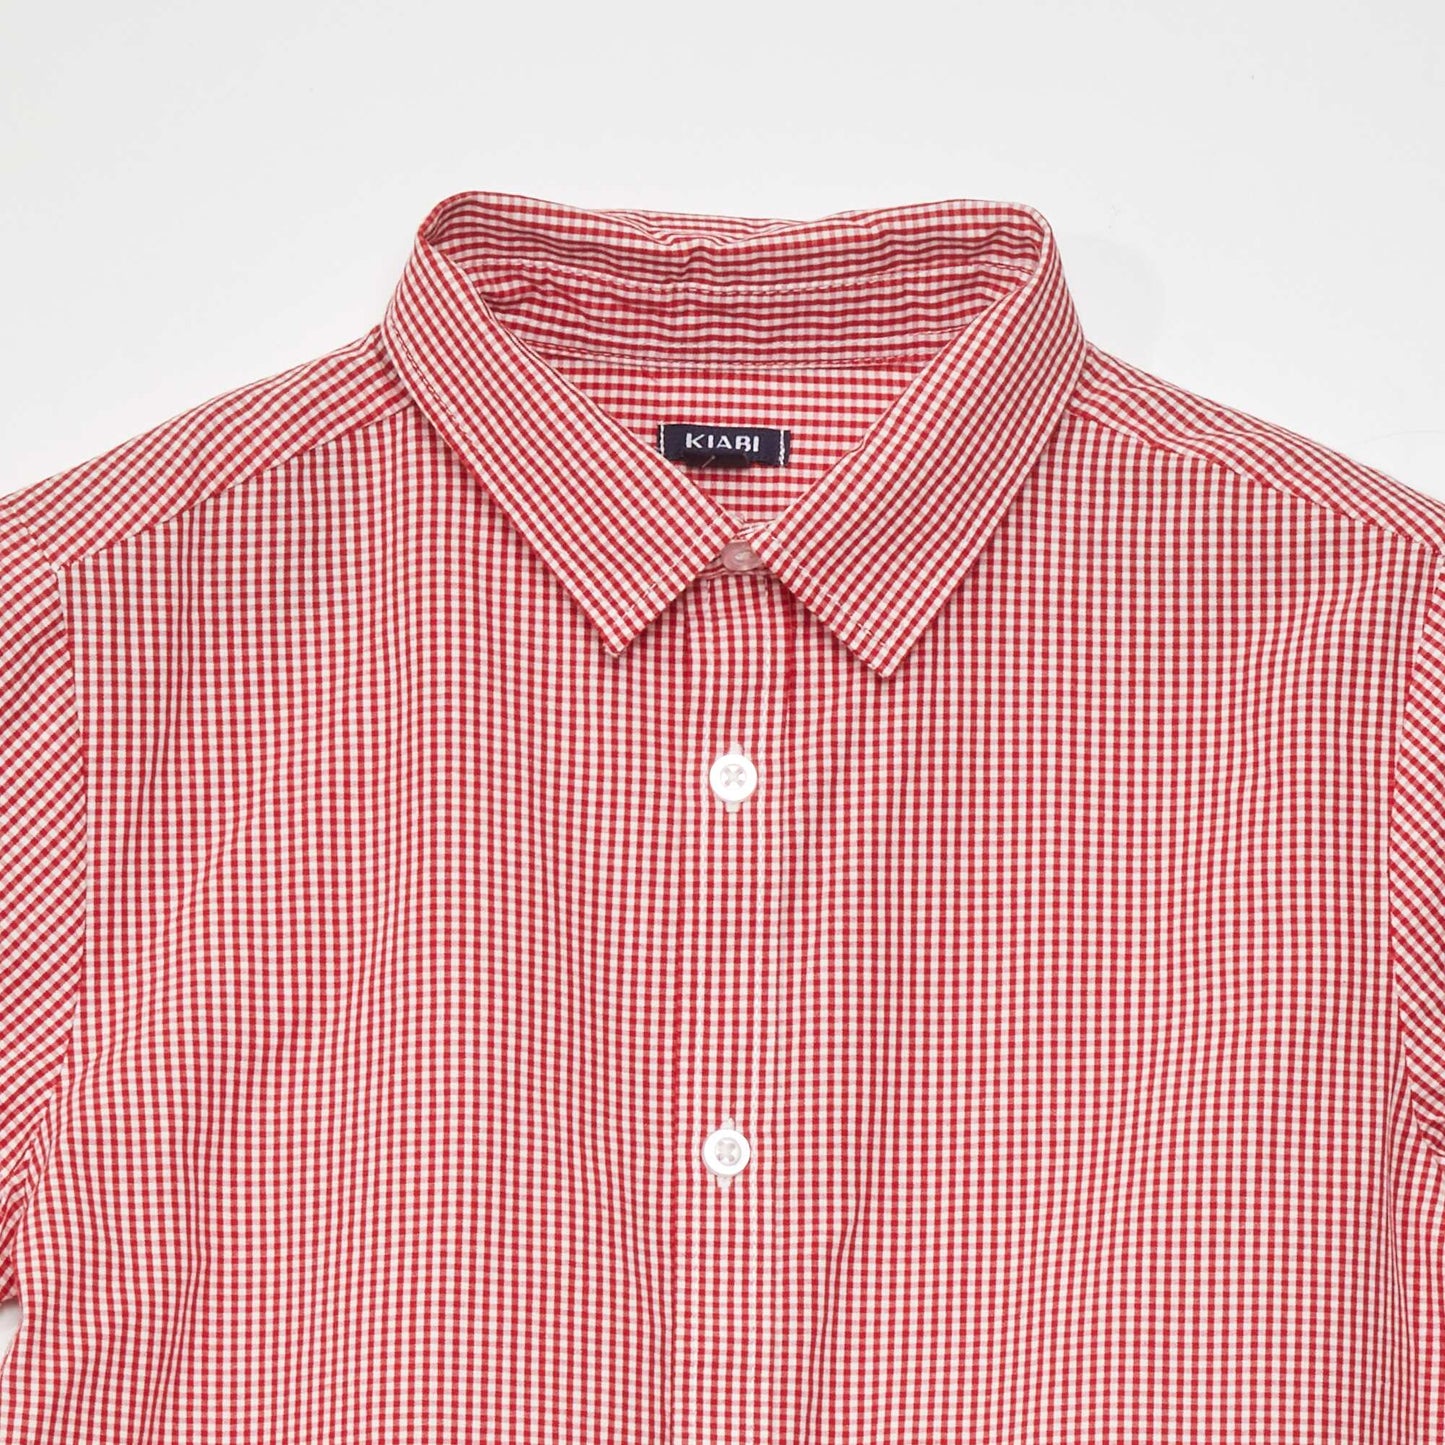 Chemise à manches courtes imprimé 'vichy' Rouge/blanc